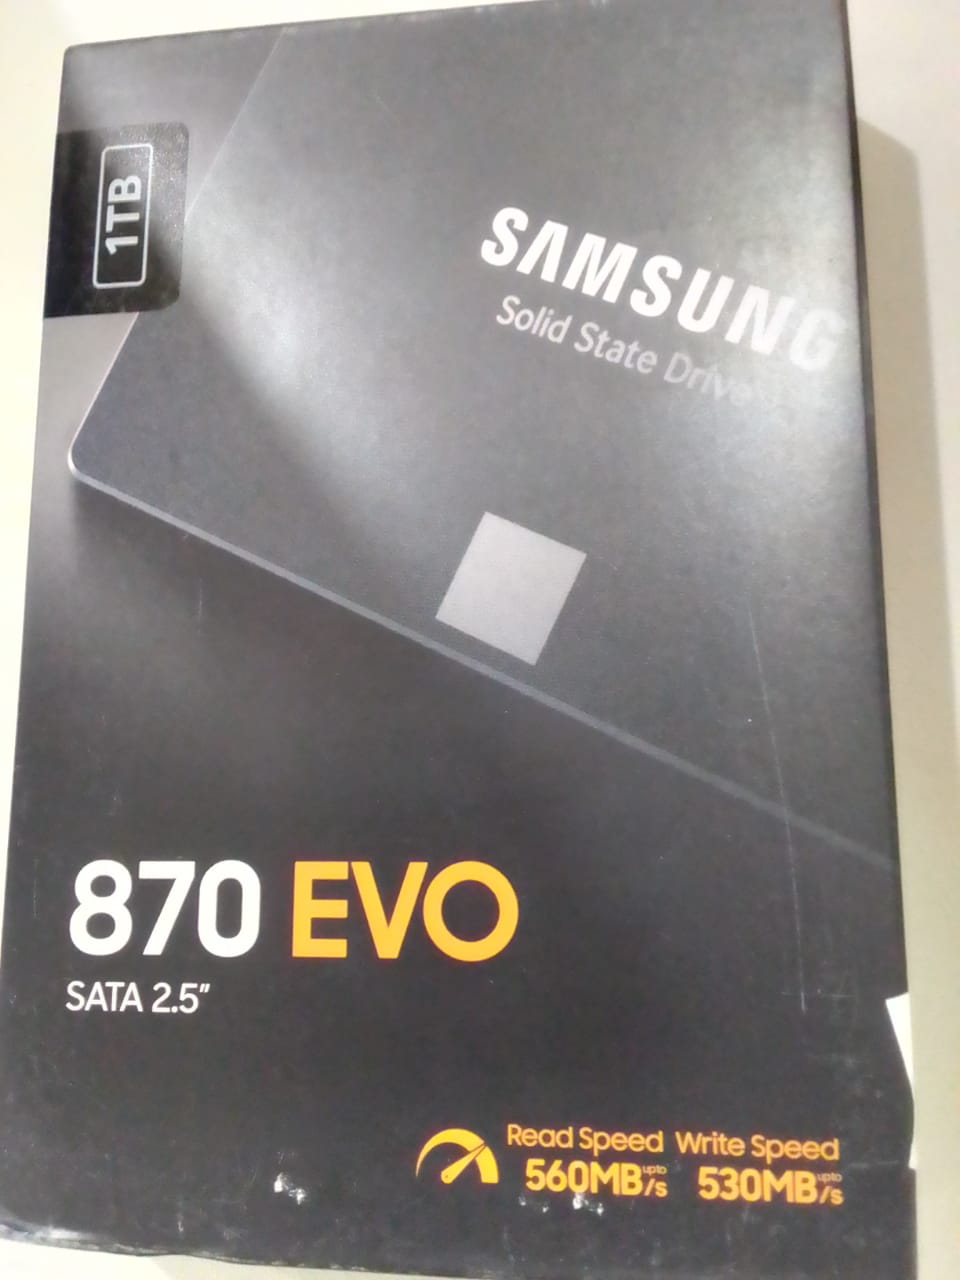 SSD BOX CLAIM 500/500 READ/WRITE